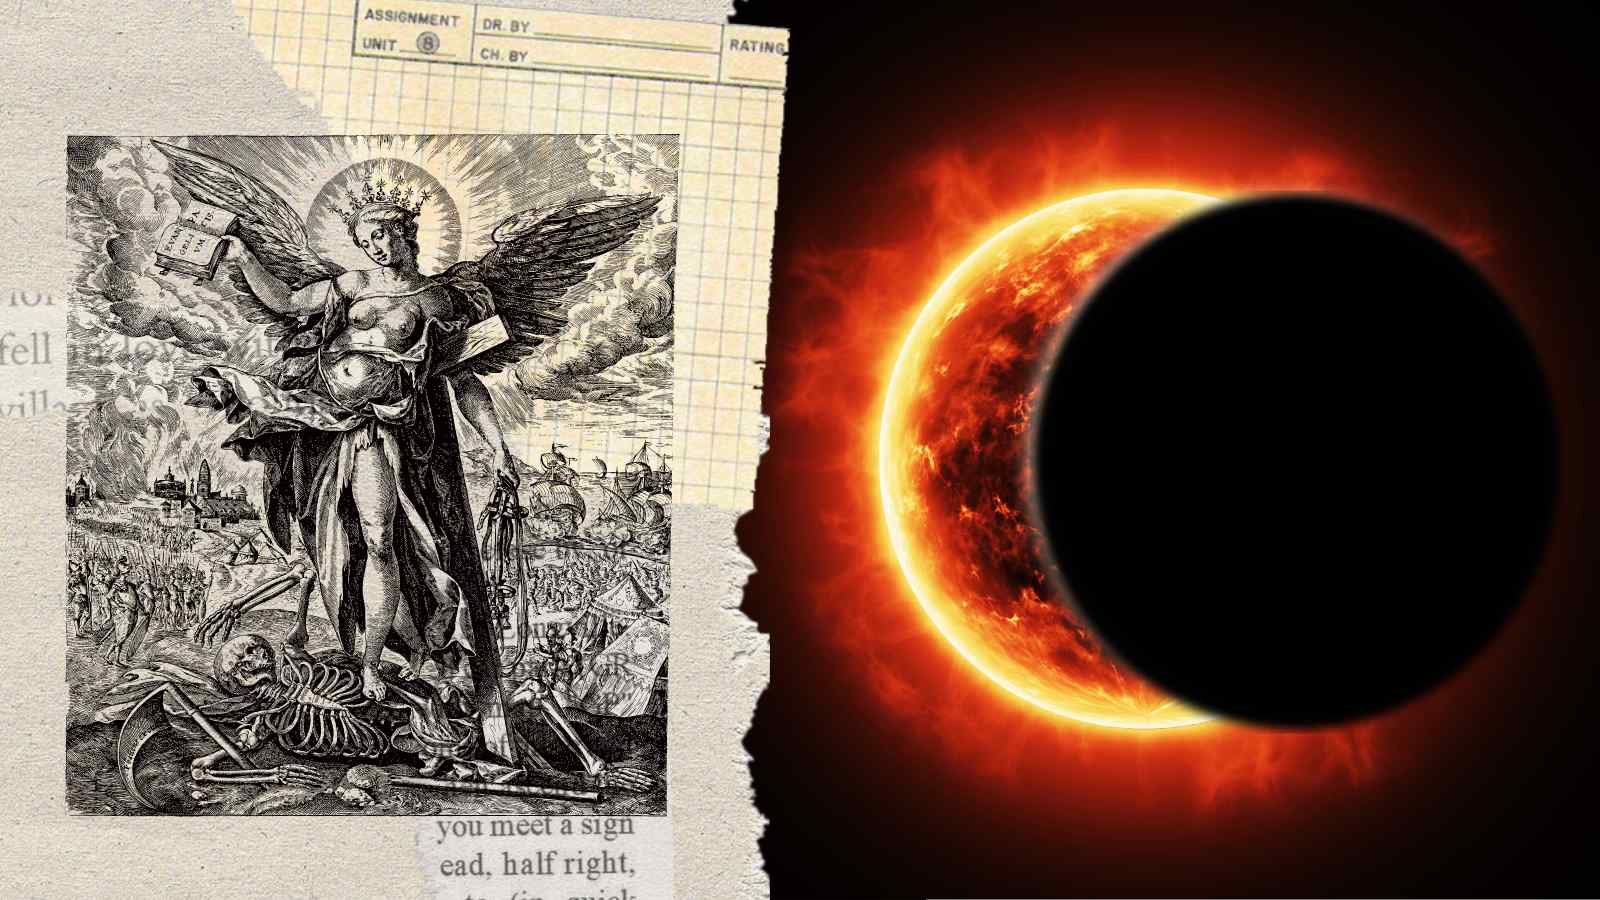 L'eclissi di aprile scatena la fantasia dei complottisti che ipotizzano la fine del mondo